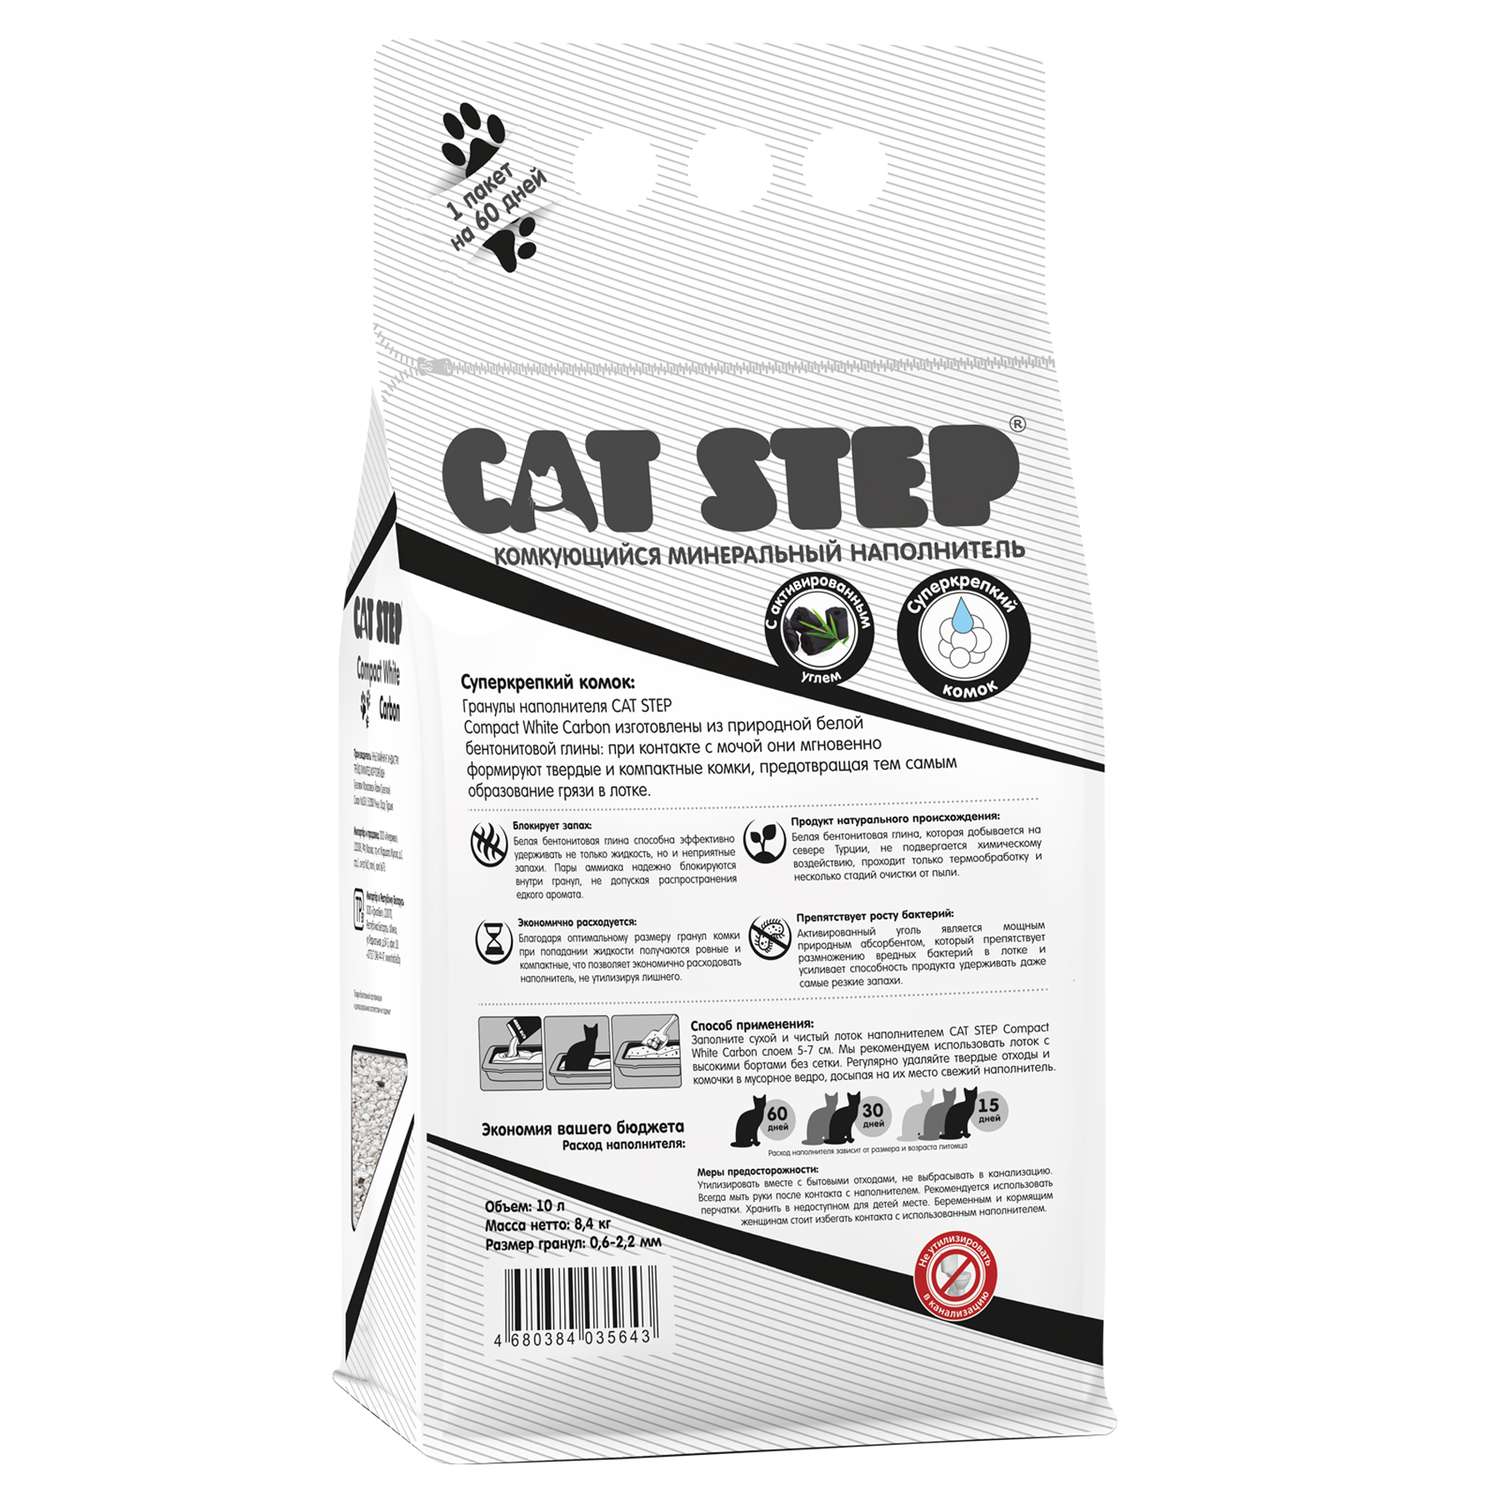 Наполнитель для кошек Cat Step Compact White Carbon комкующийся минеральный 10л - фото 4